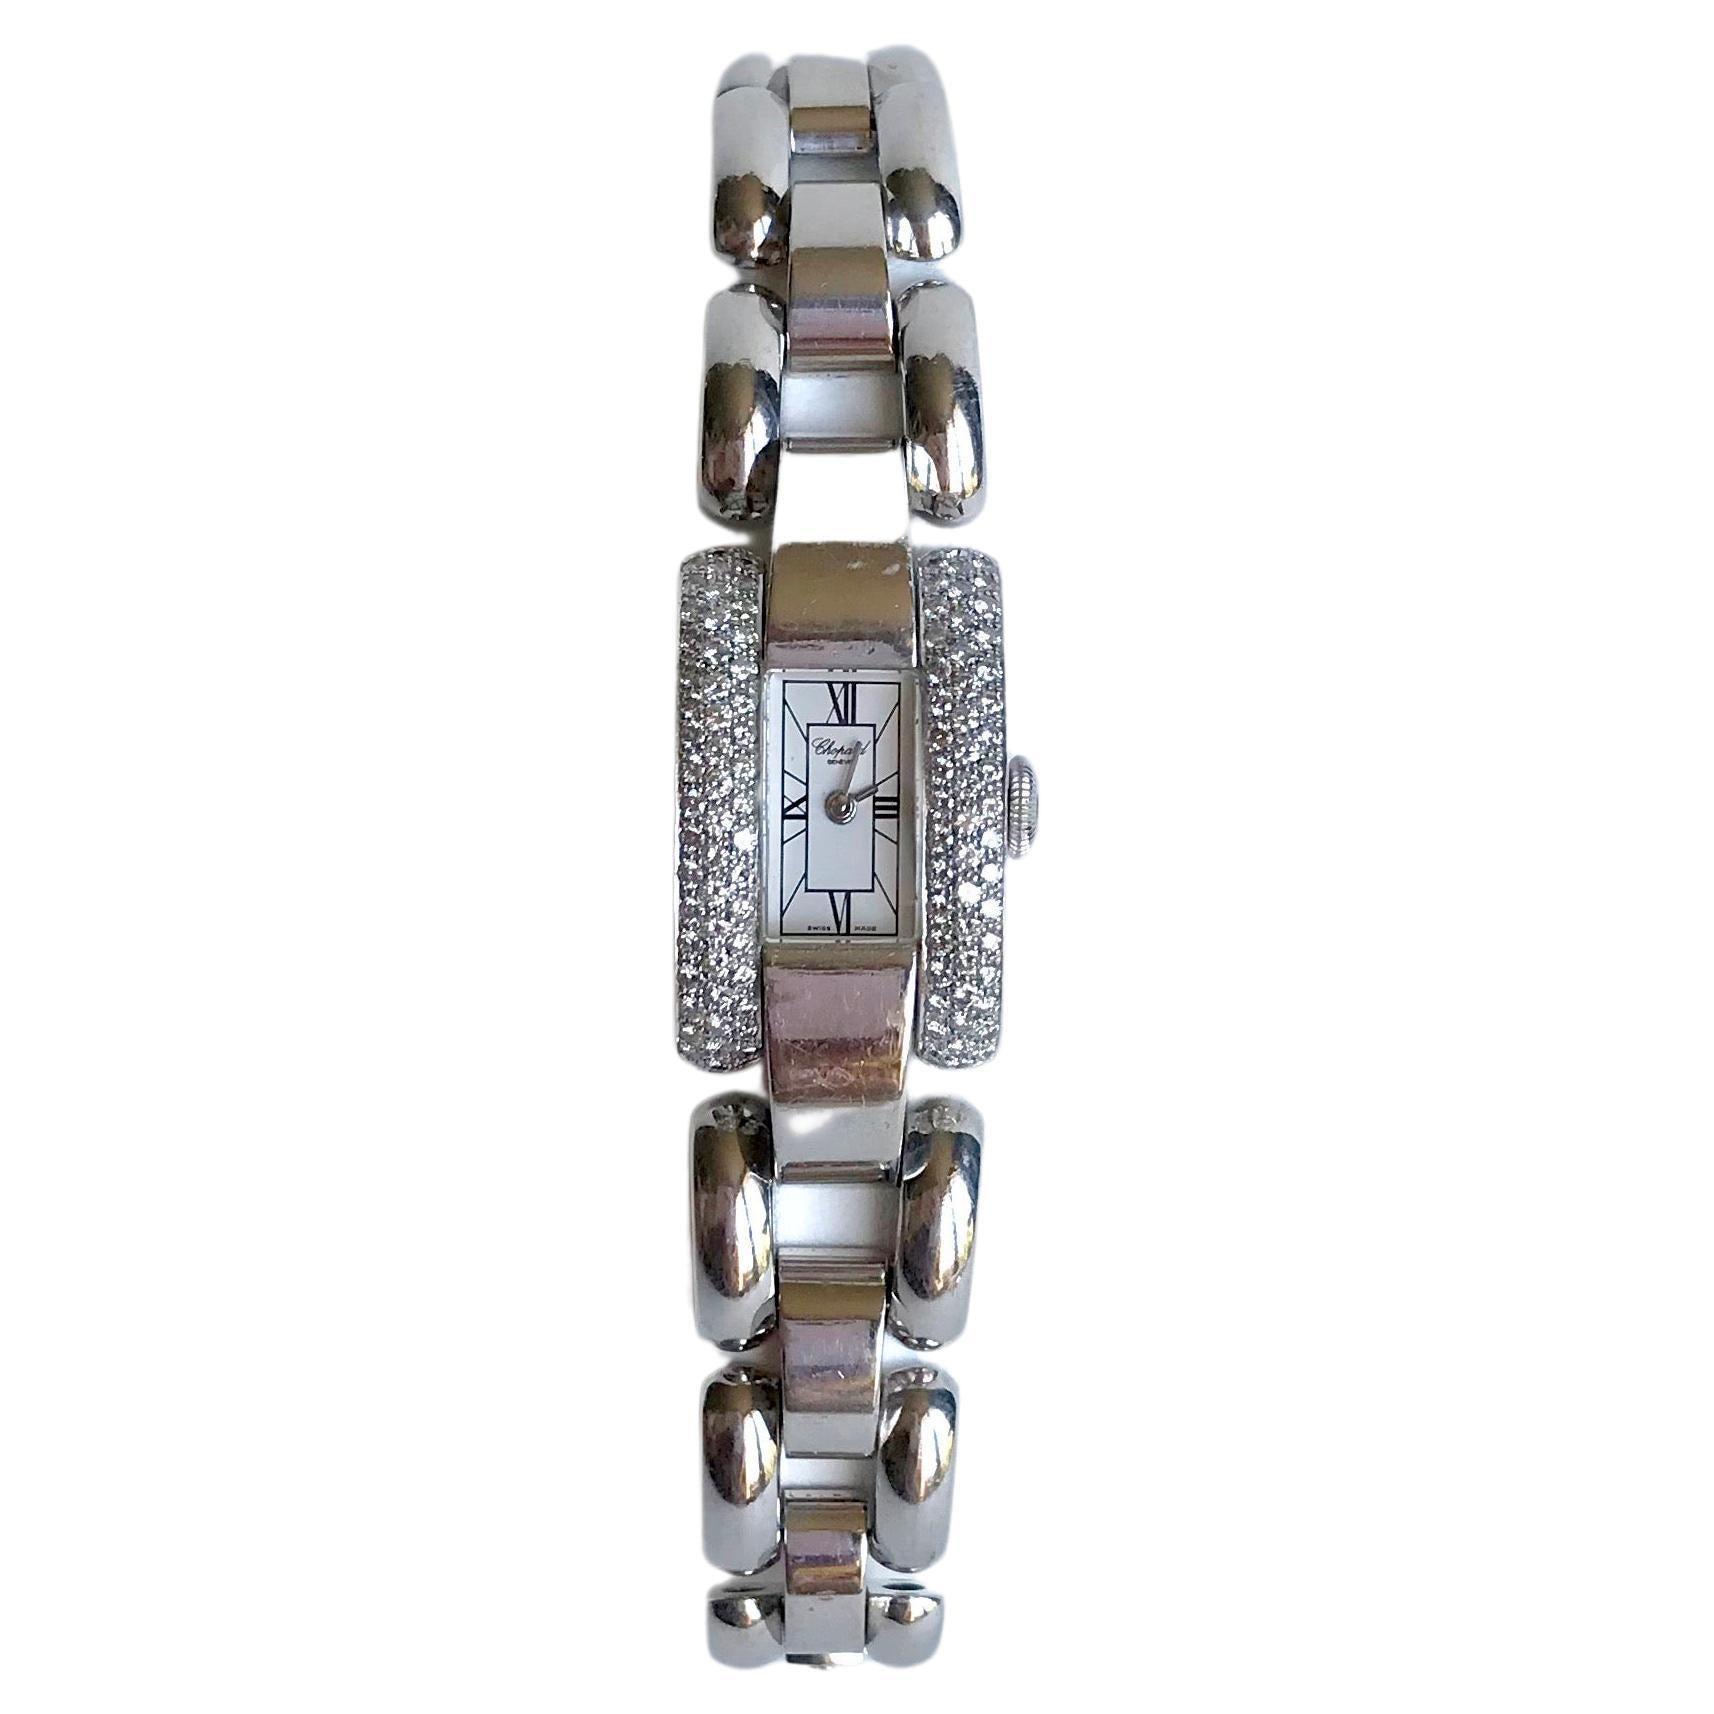 Montre-bracelet Chopard en or 18 carats et diamants, modèle La Strada